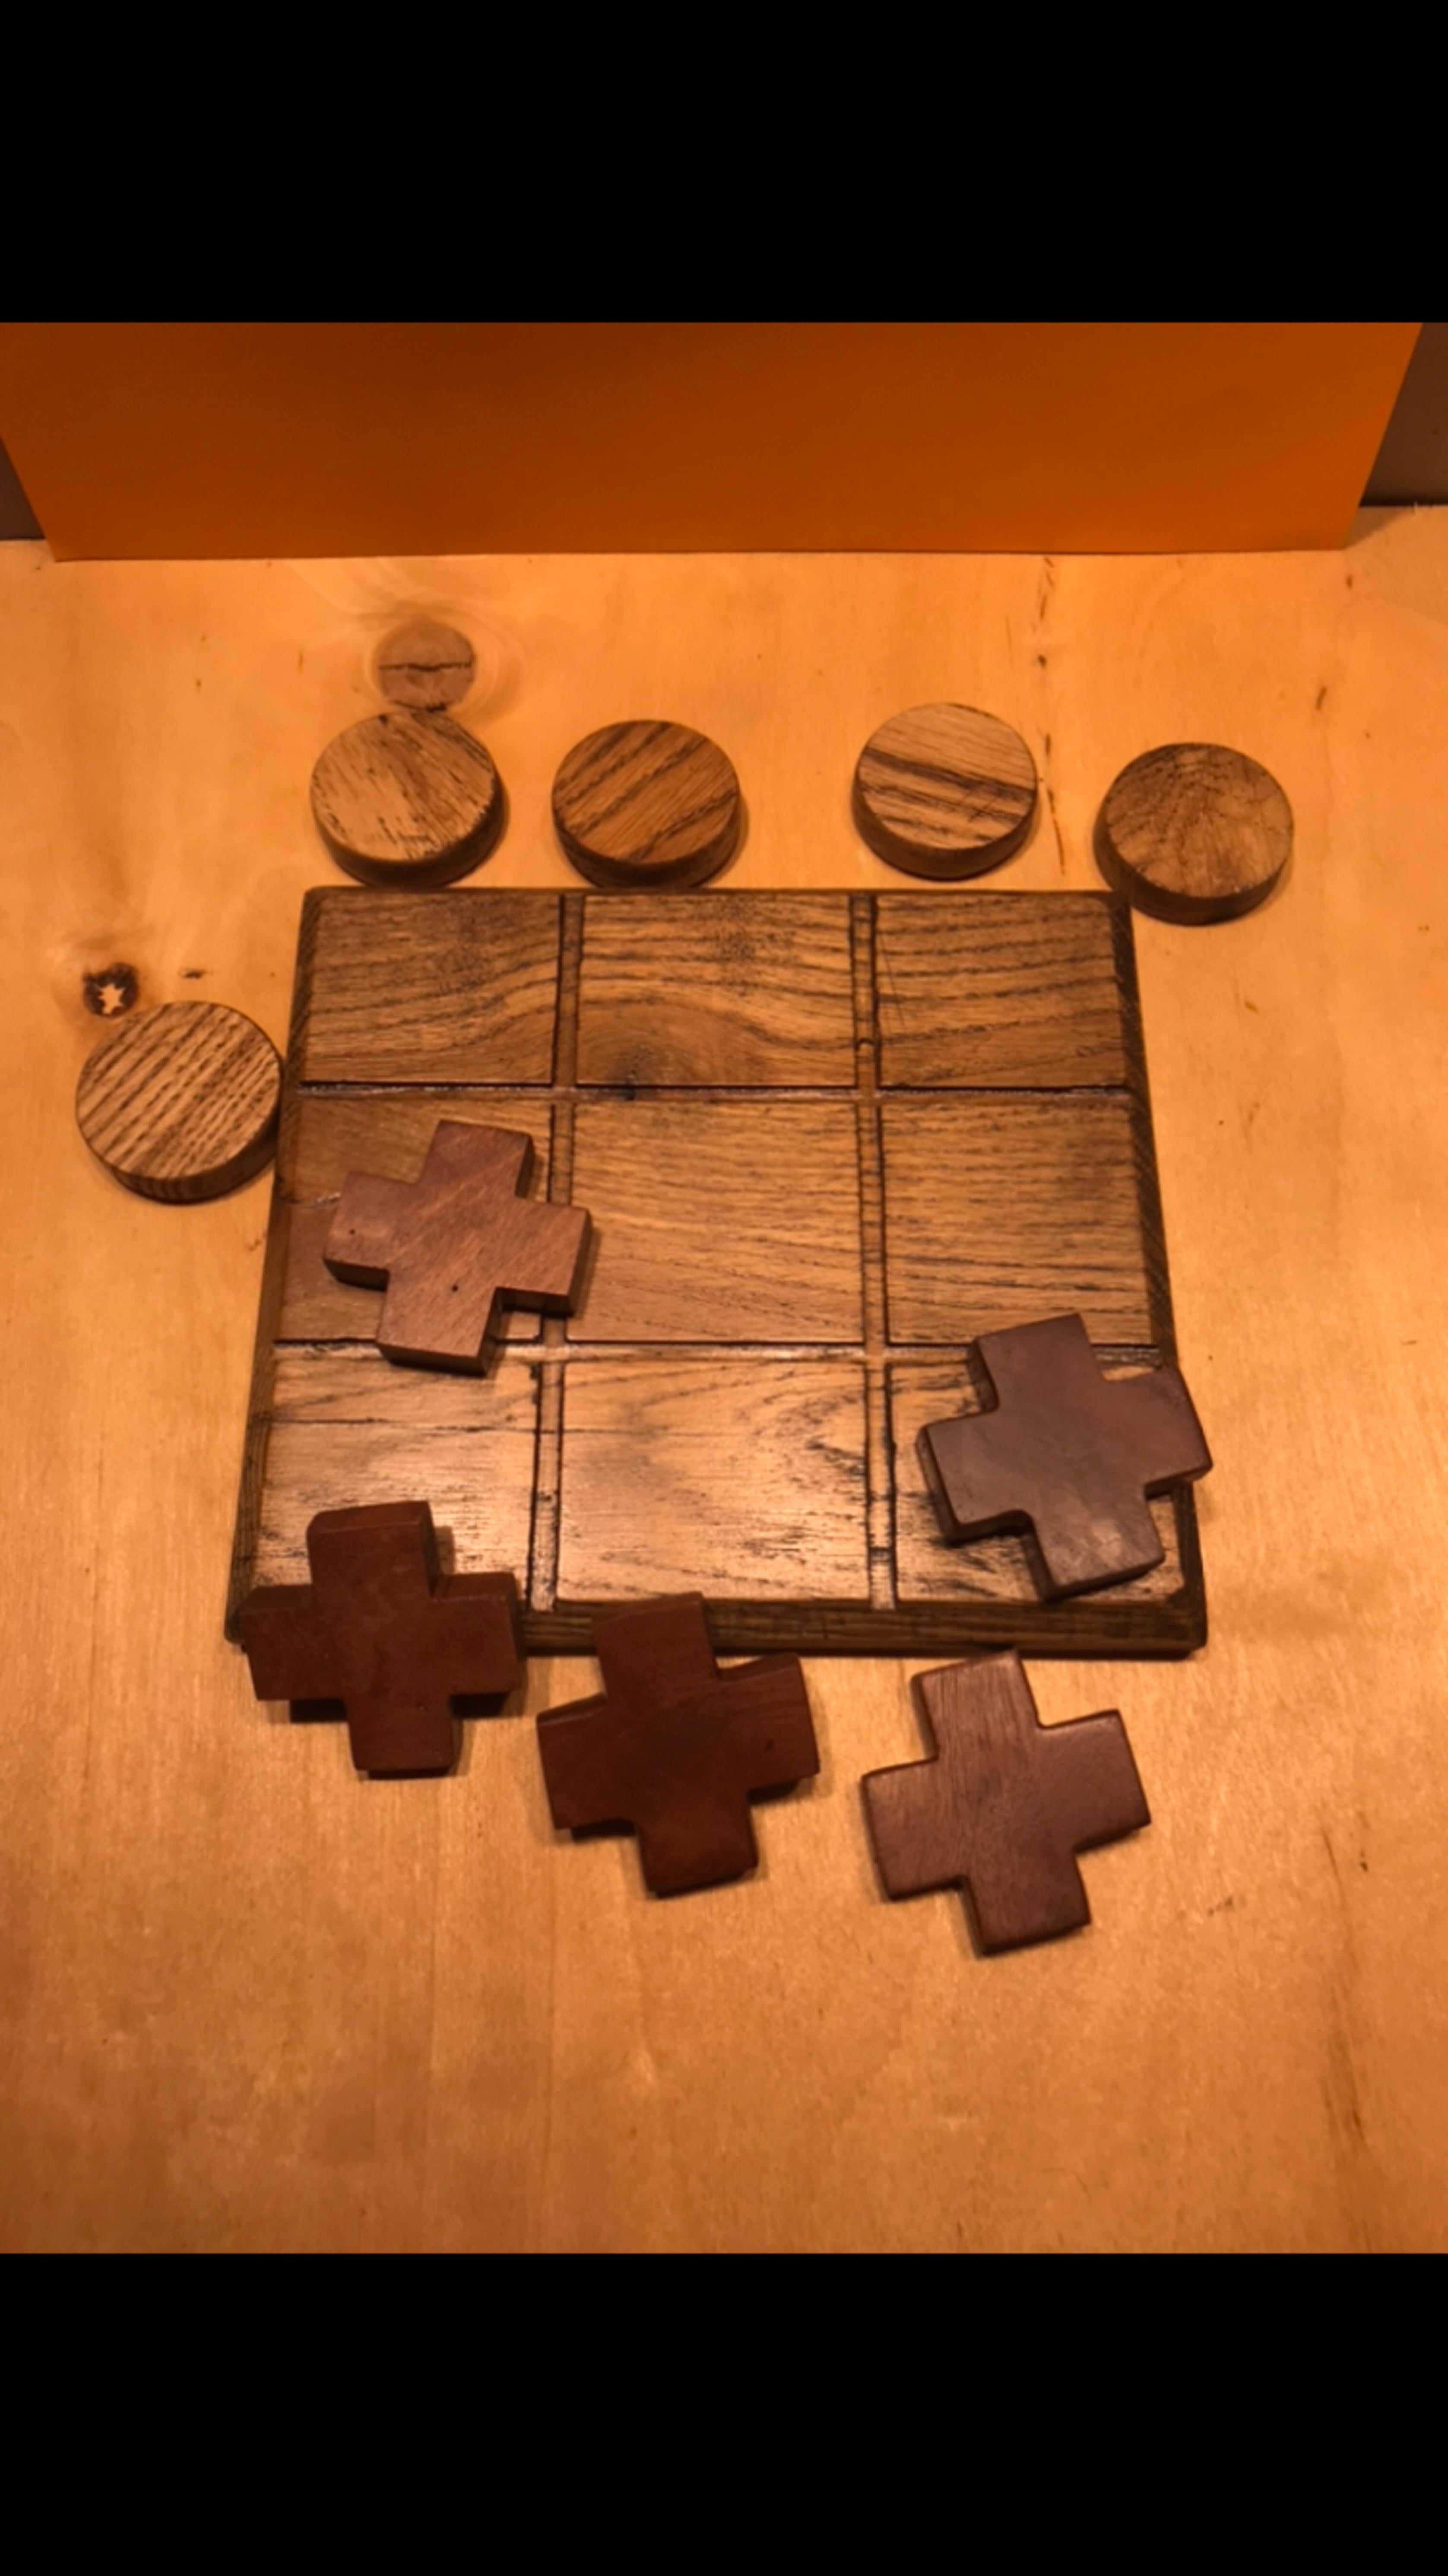 Board game tic-tac-toe made of oak wood, oiled, handmade